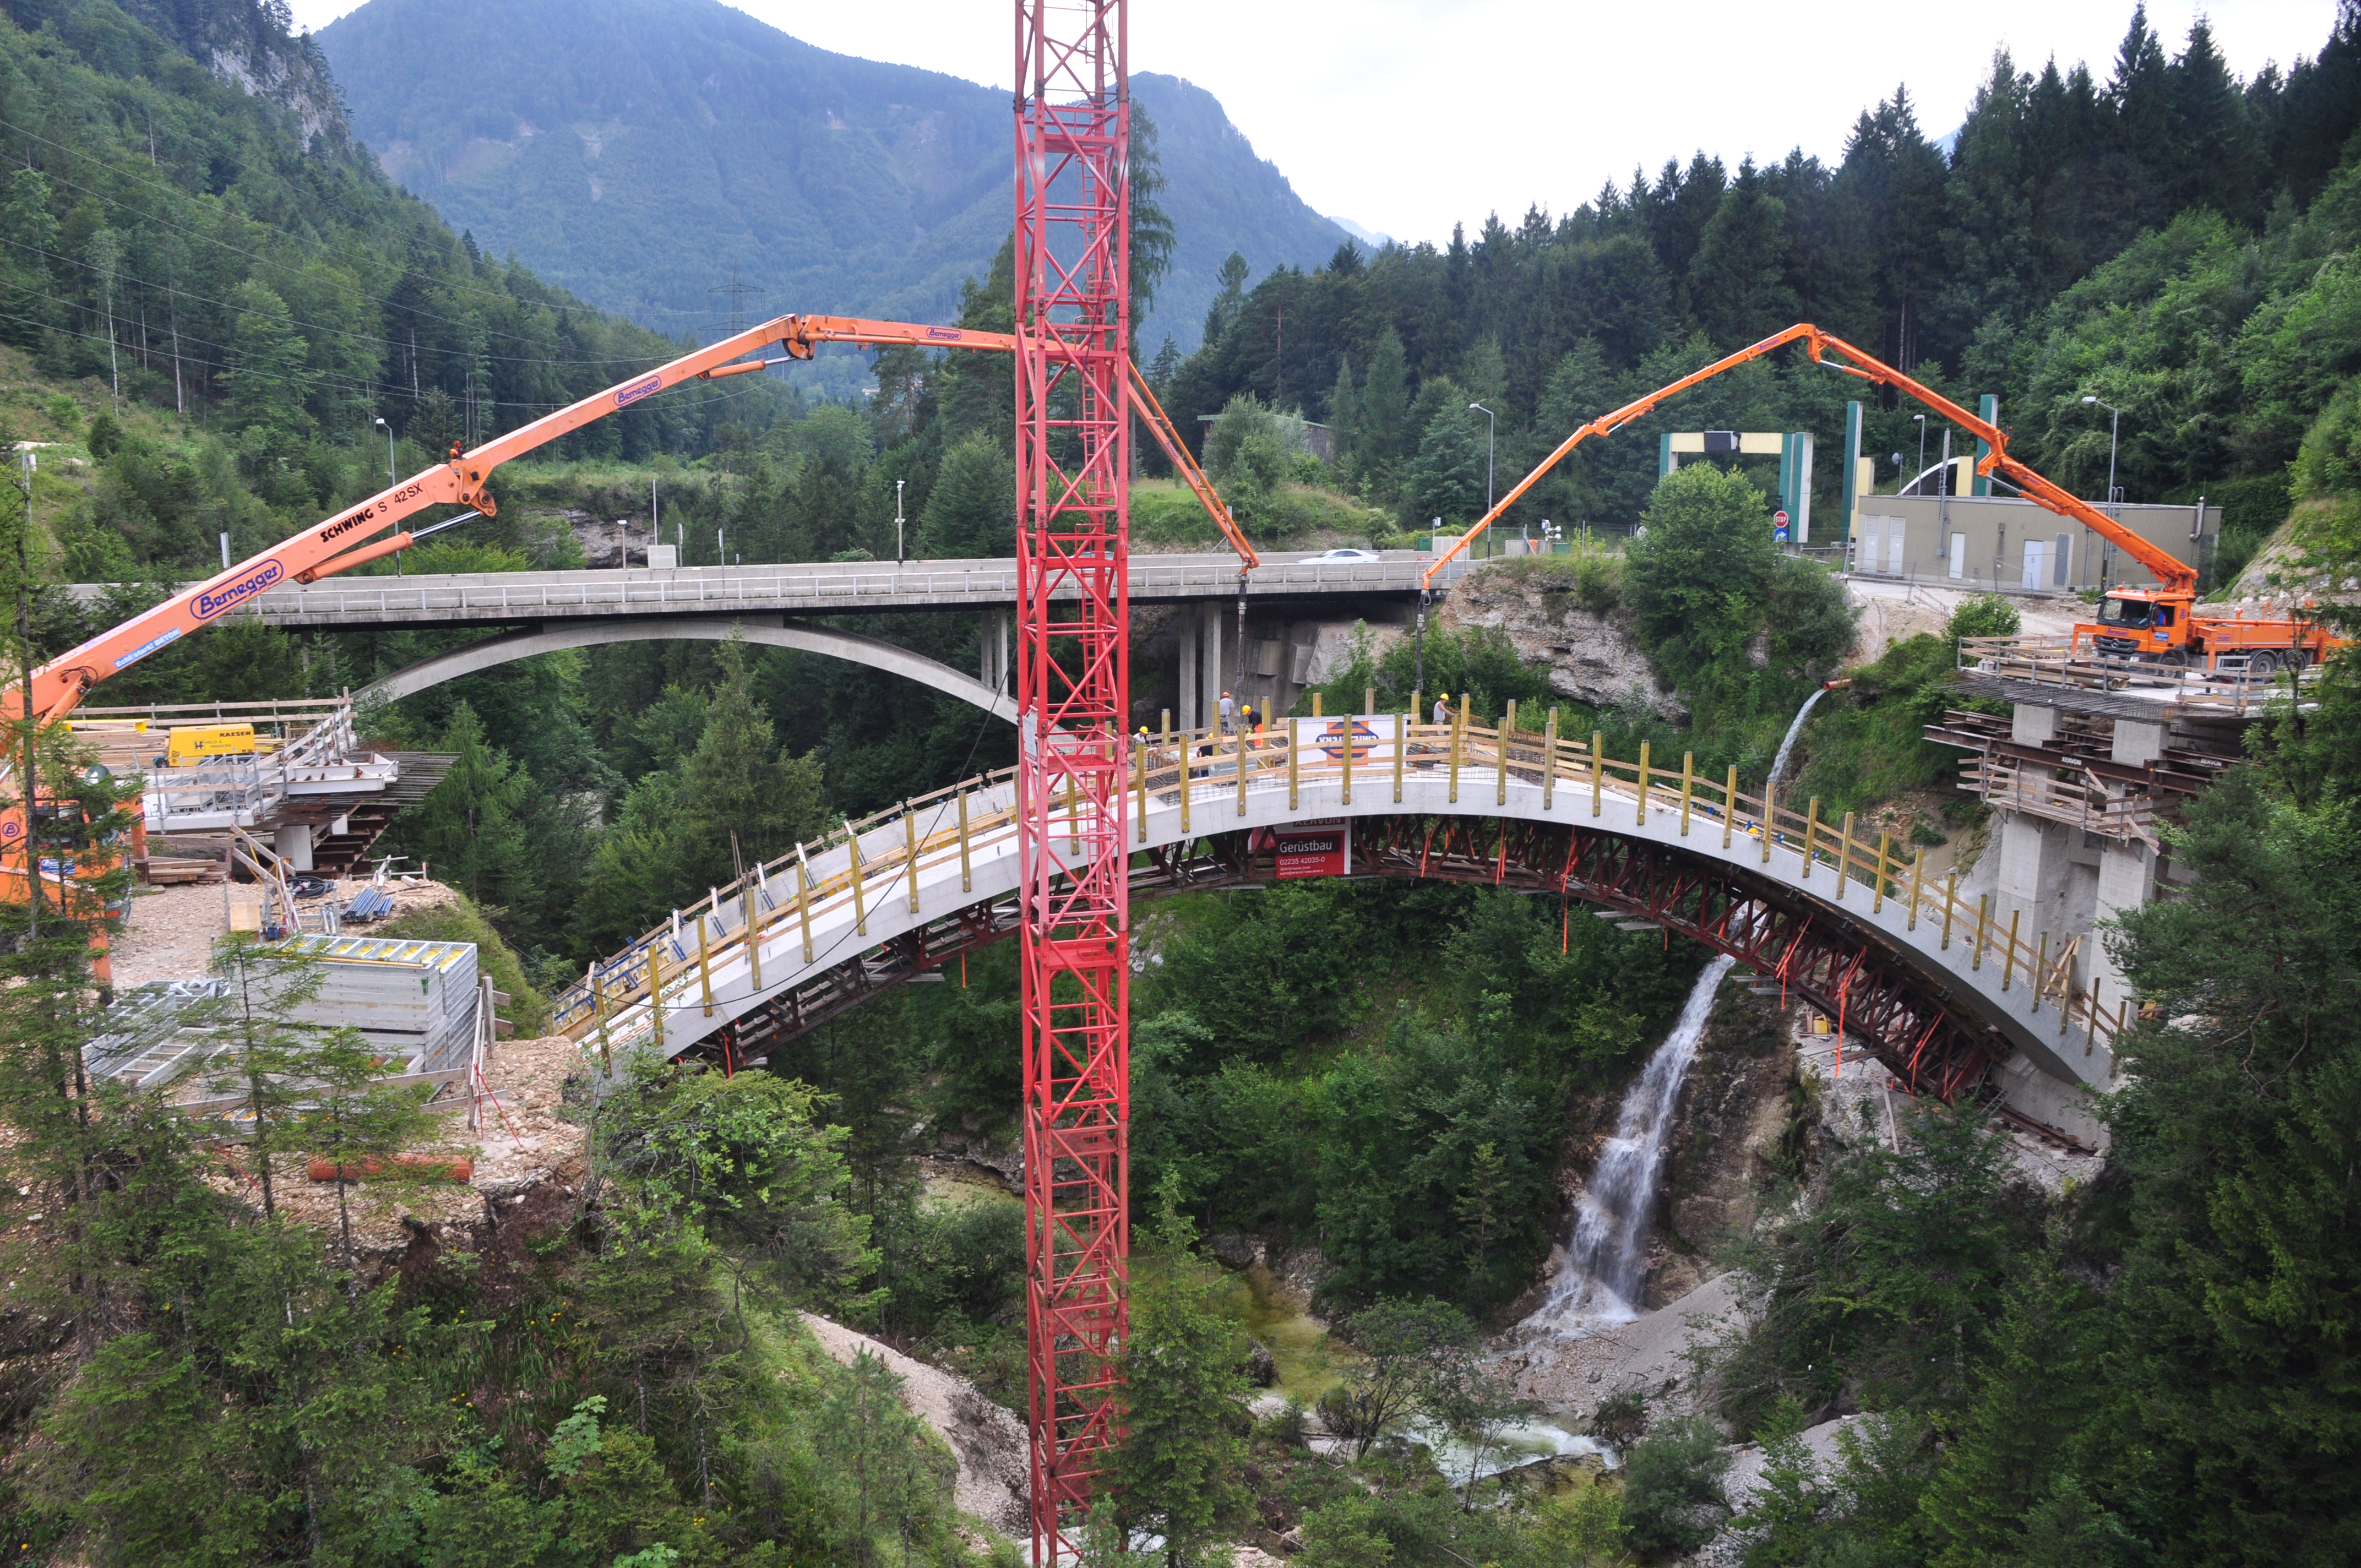 A9 Teichlbrücke - Wegen- en bruggenbouw